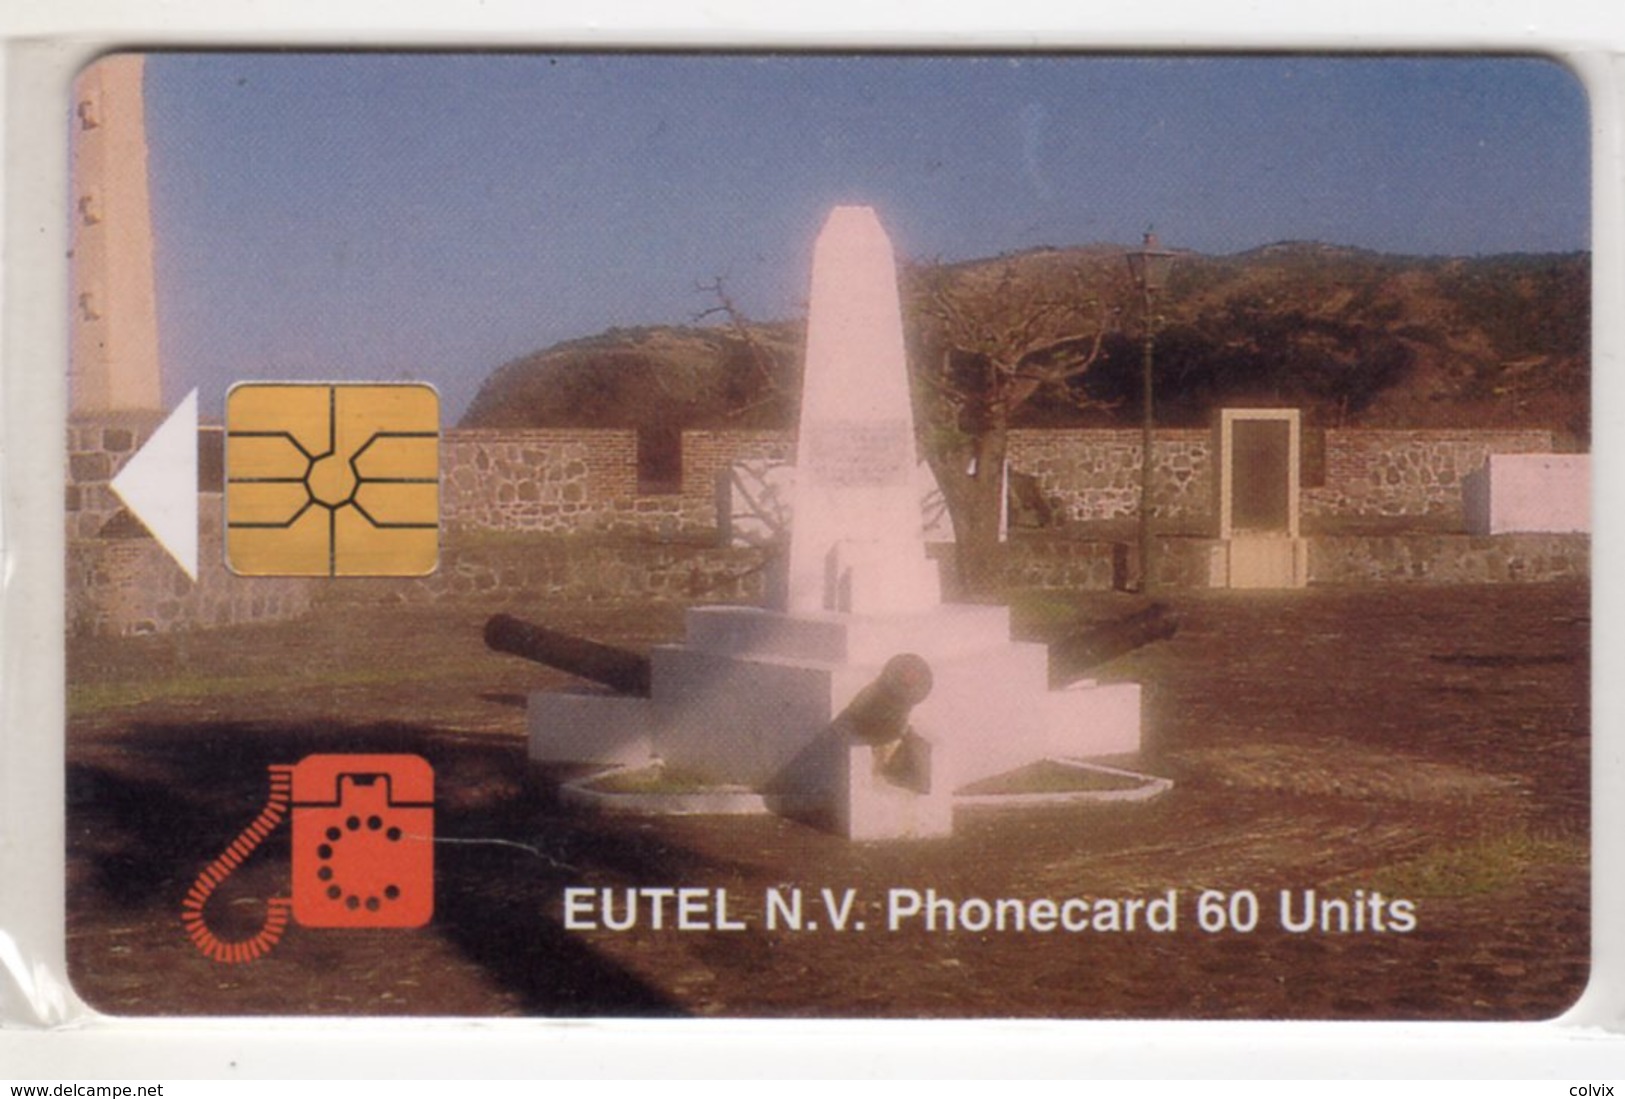 ANTILLES NEERLANDAISES SAINT EUSTACHE REF MV CARDS STAT-C1  ORANGE FORT 2000 Ex - Antillas (Nerlandesas)